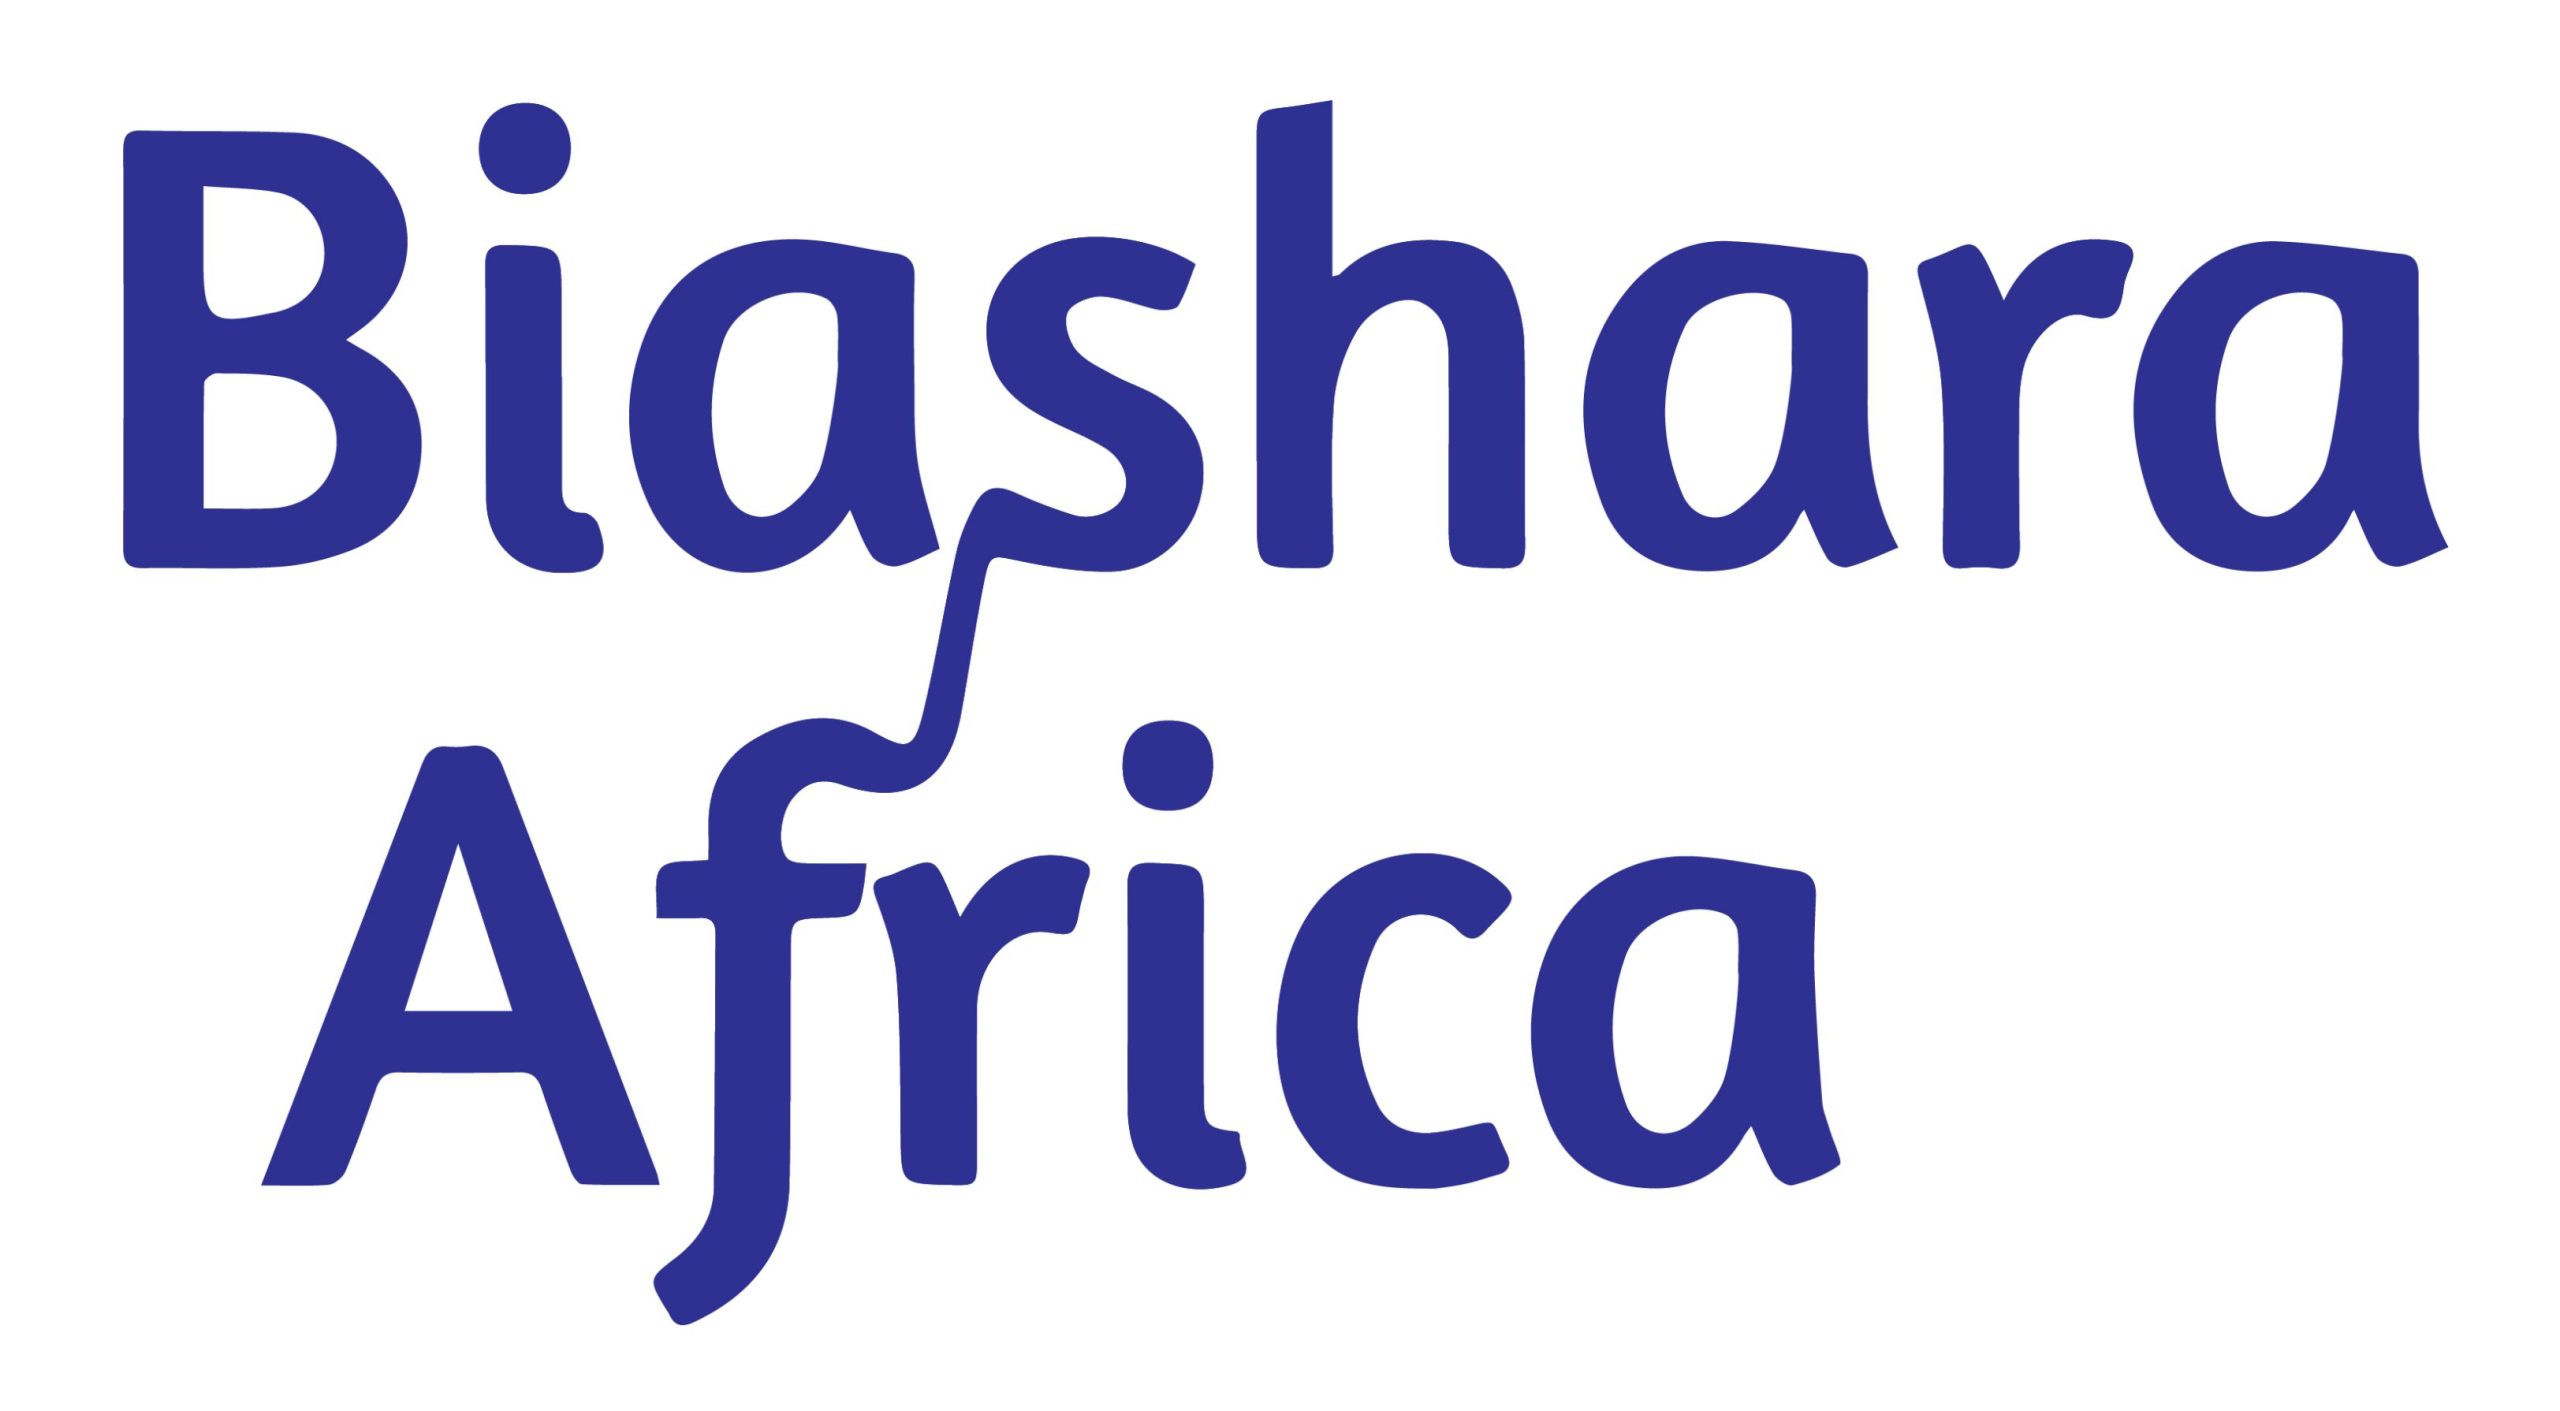 Biashara Africa Small Business Awards